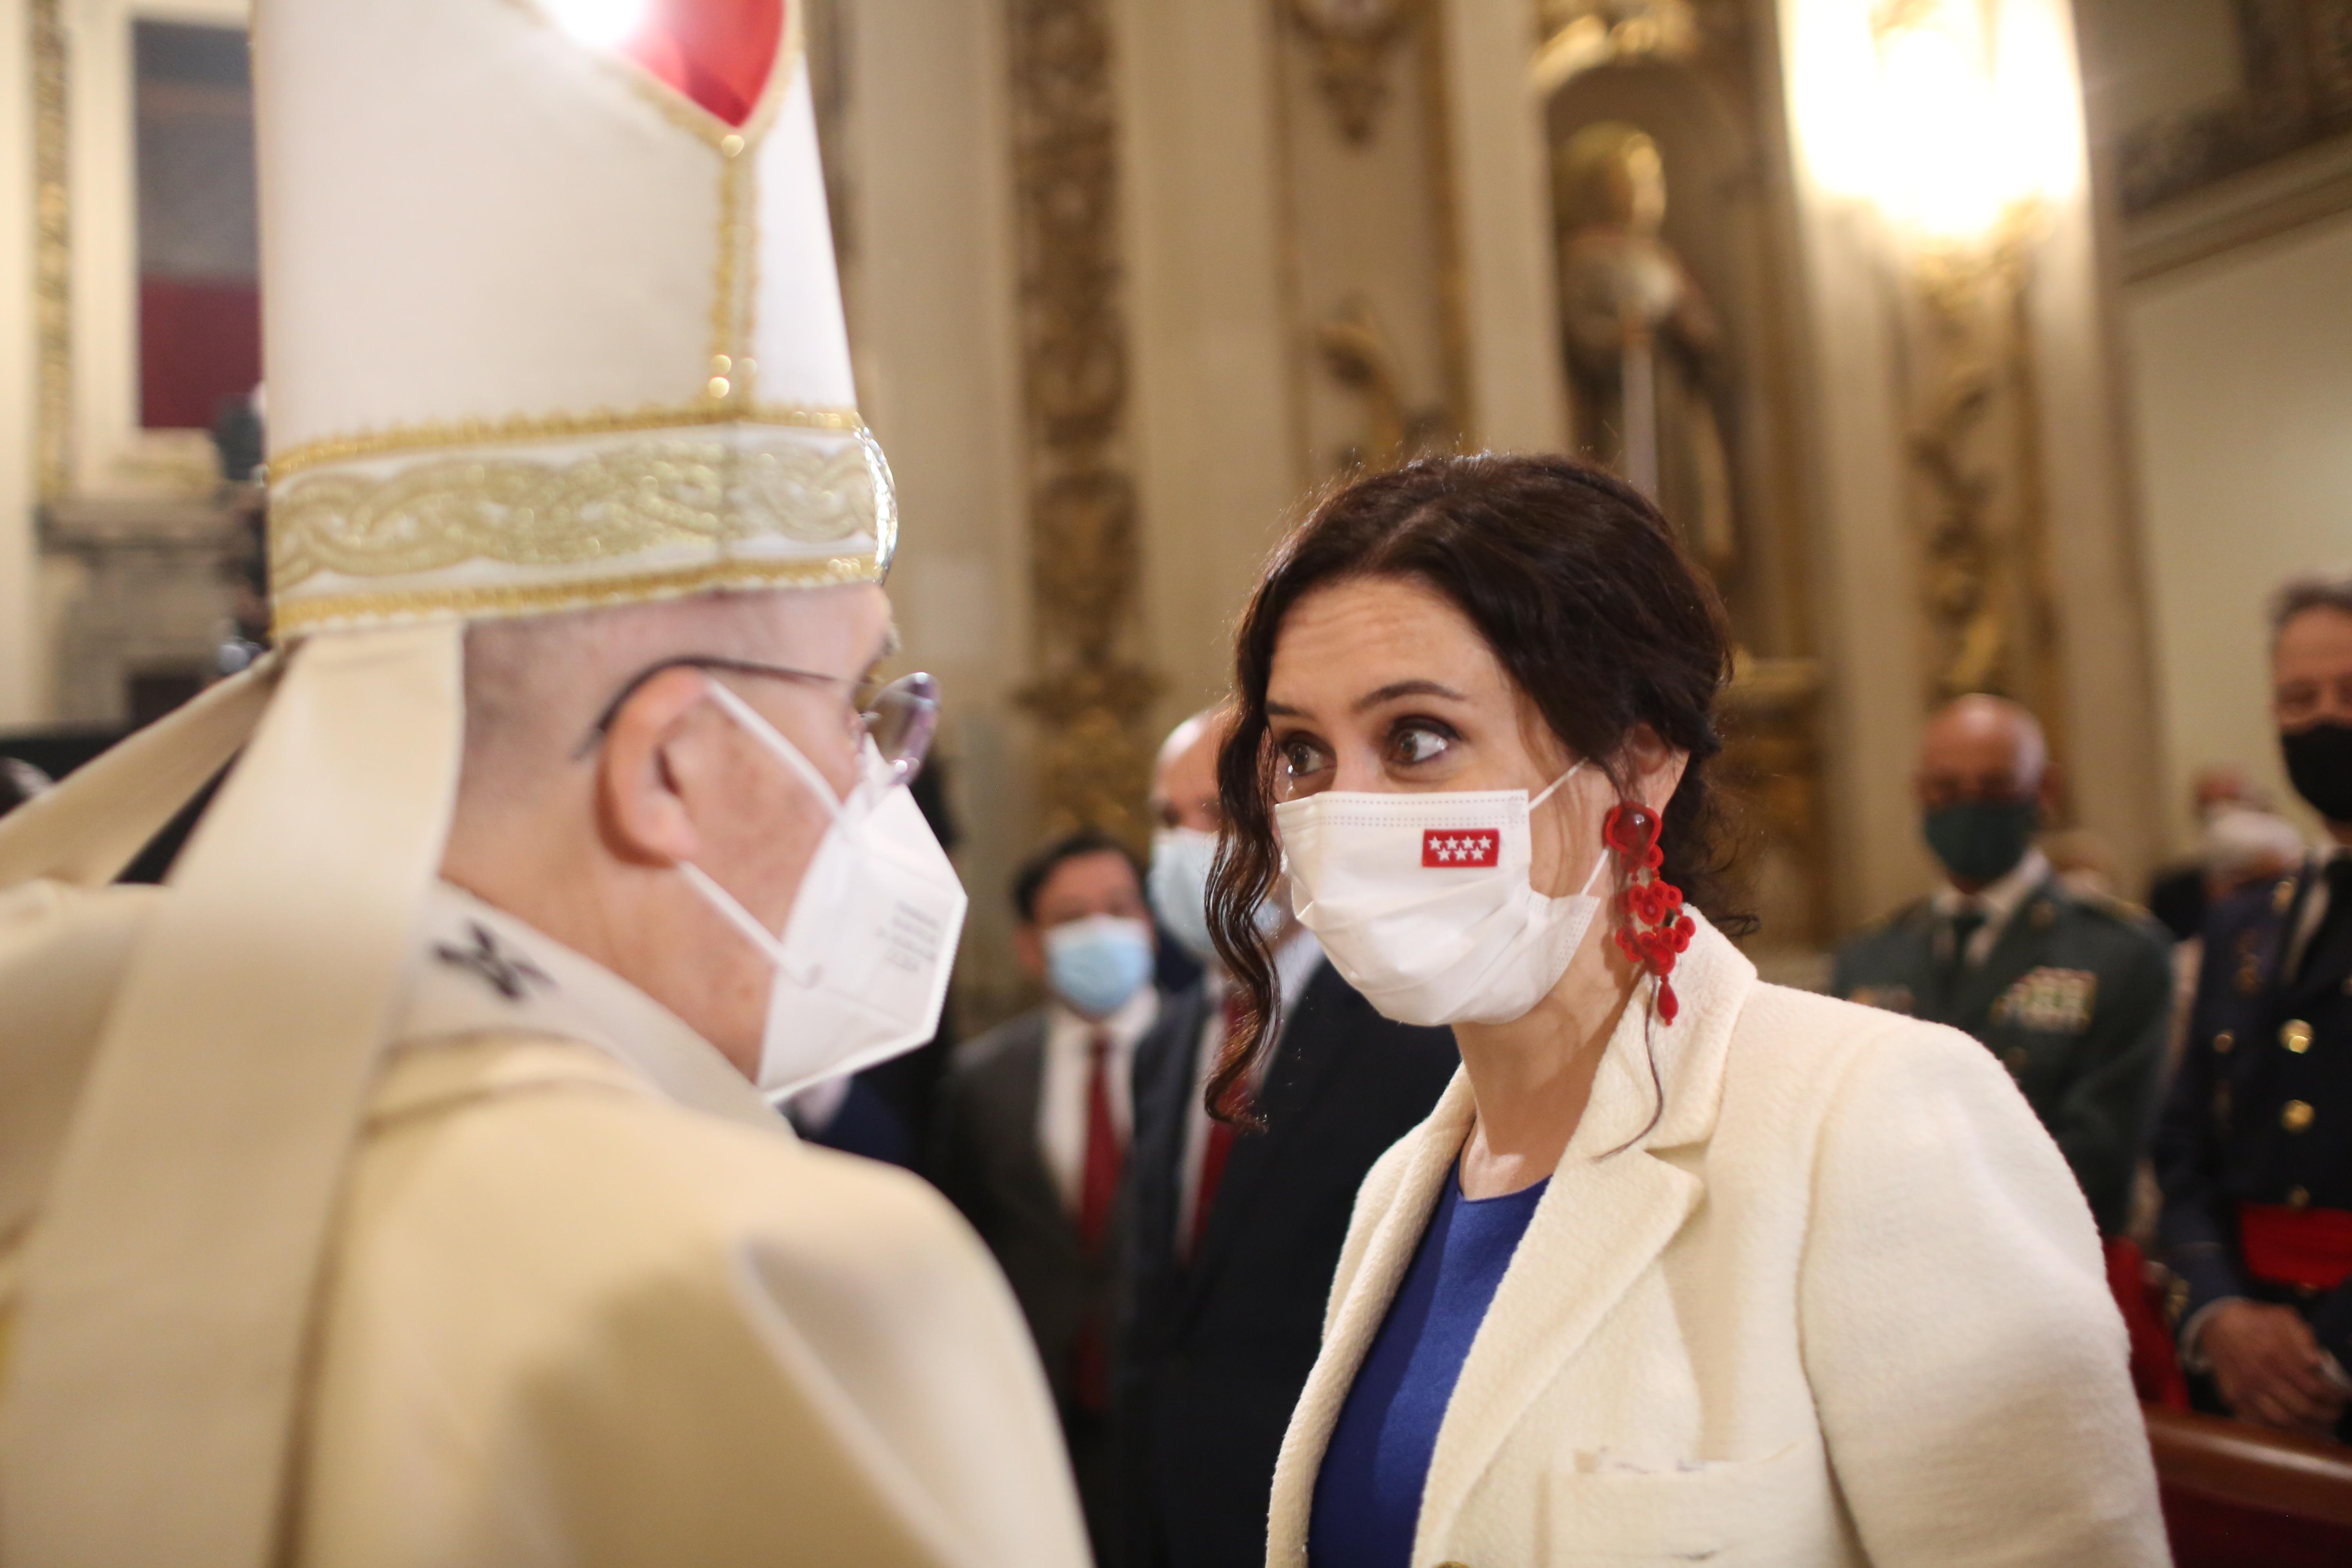 La presidenta de la Comunidad de Madrid, Isabel Díaz Ayuso, conversa con el Arzobispo de Madrid, Carlos Osoro, durante la misa concelebrada en honor a San Isidro Labrador en la Real Colegiata de San Isidro, a 15 de mayo de 2021